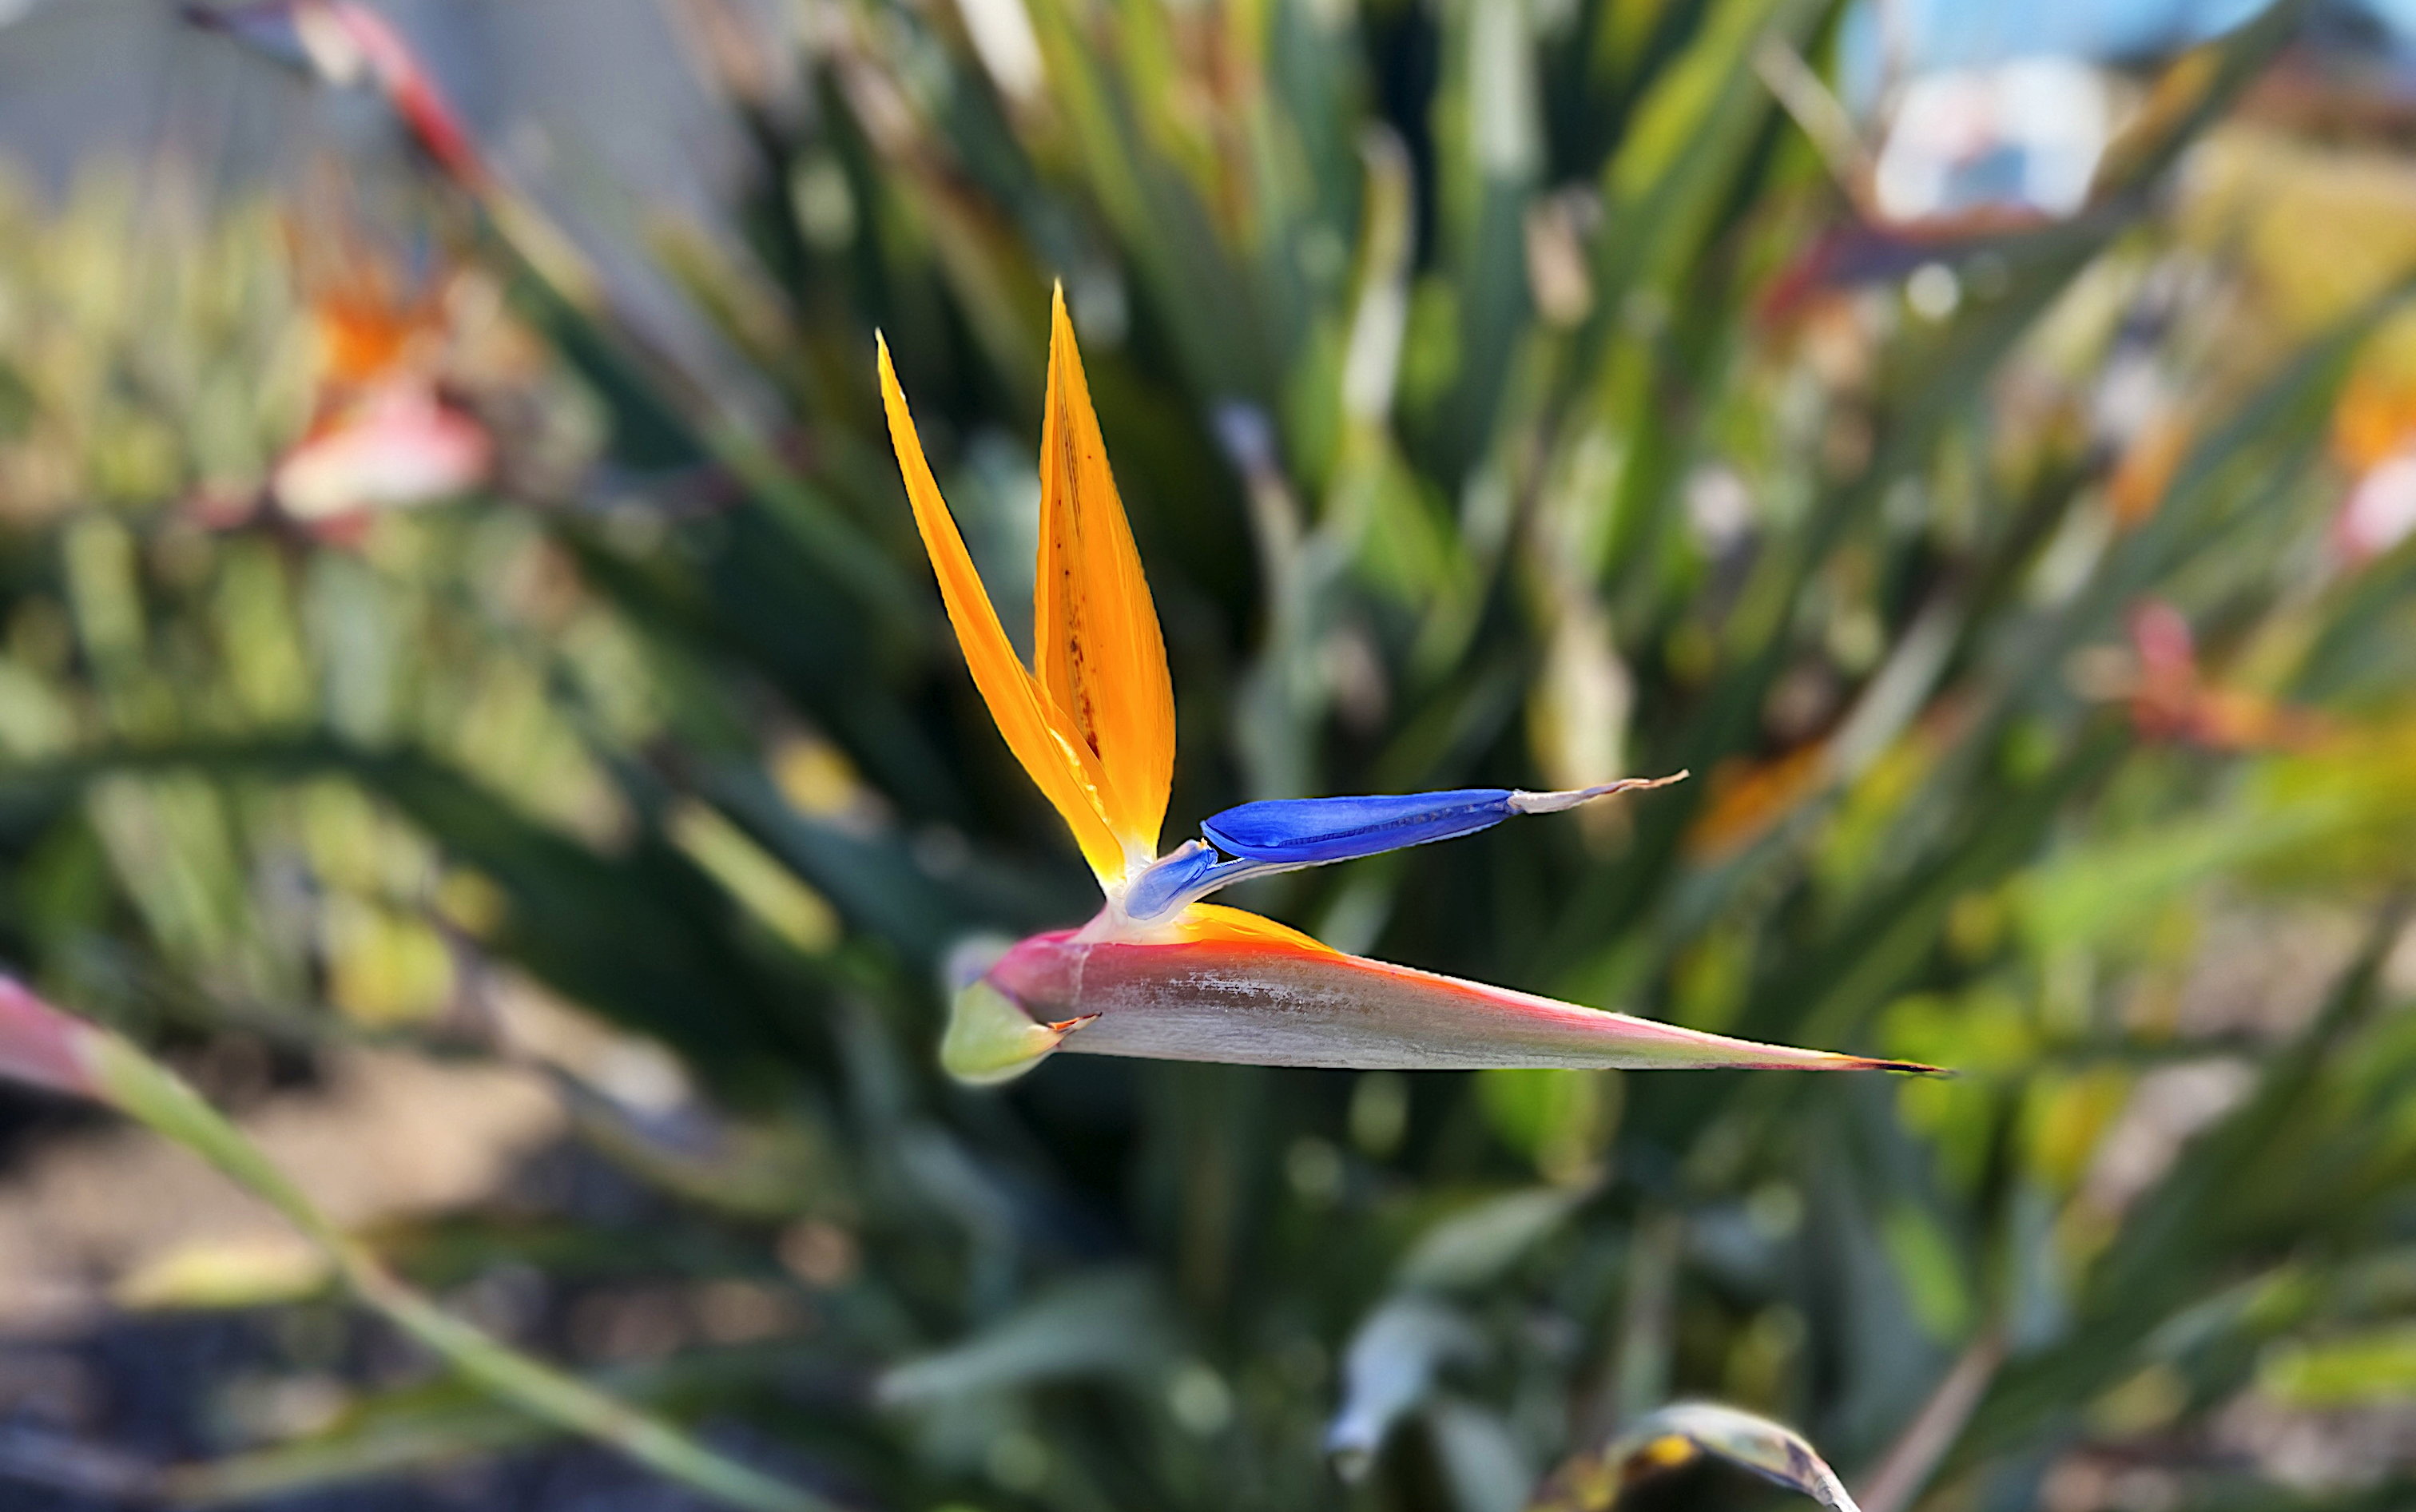 Eine Paradiesvogelblume oder auch Strelitzia reginae, freigestellt vom Hintergrund. Die gelb/orangen Blüten kontrastieren sehr schön mit dem Blau der Blütenhüllblätter.